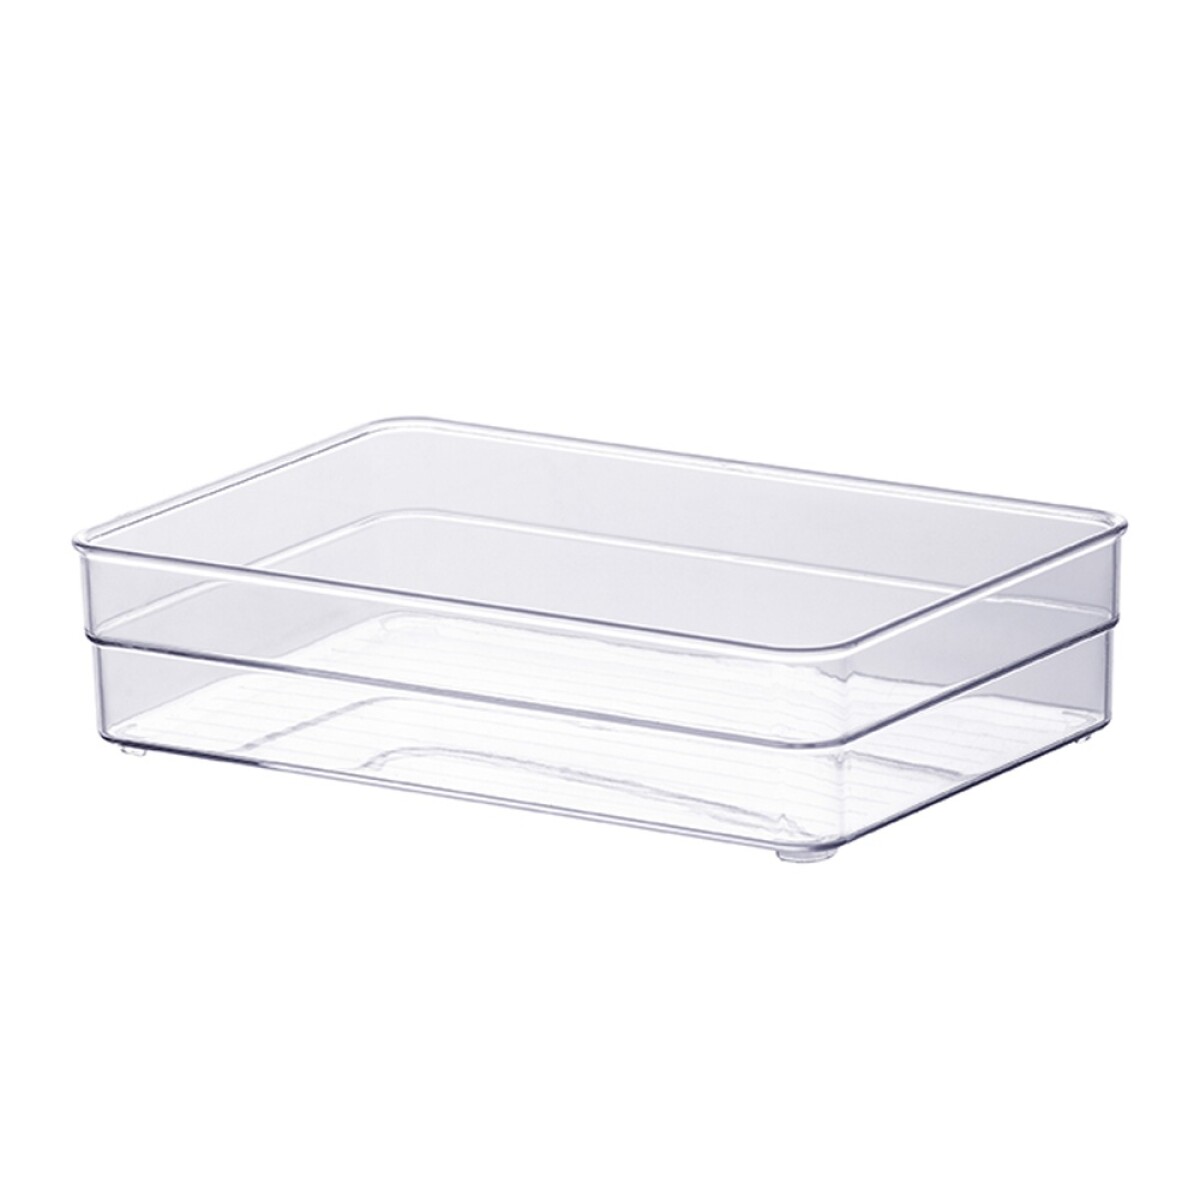 Caja Organizadora Multiuso Para Hogar Diamond 22.5x15x5.2cm - Transparente 